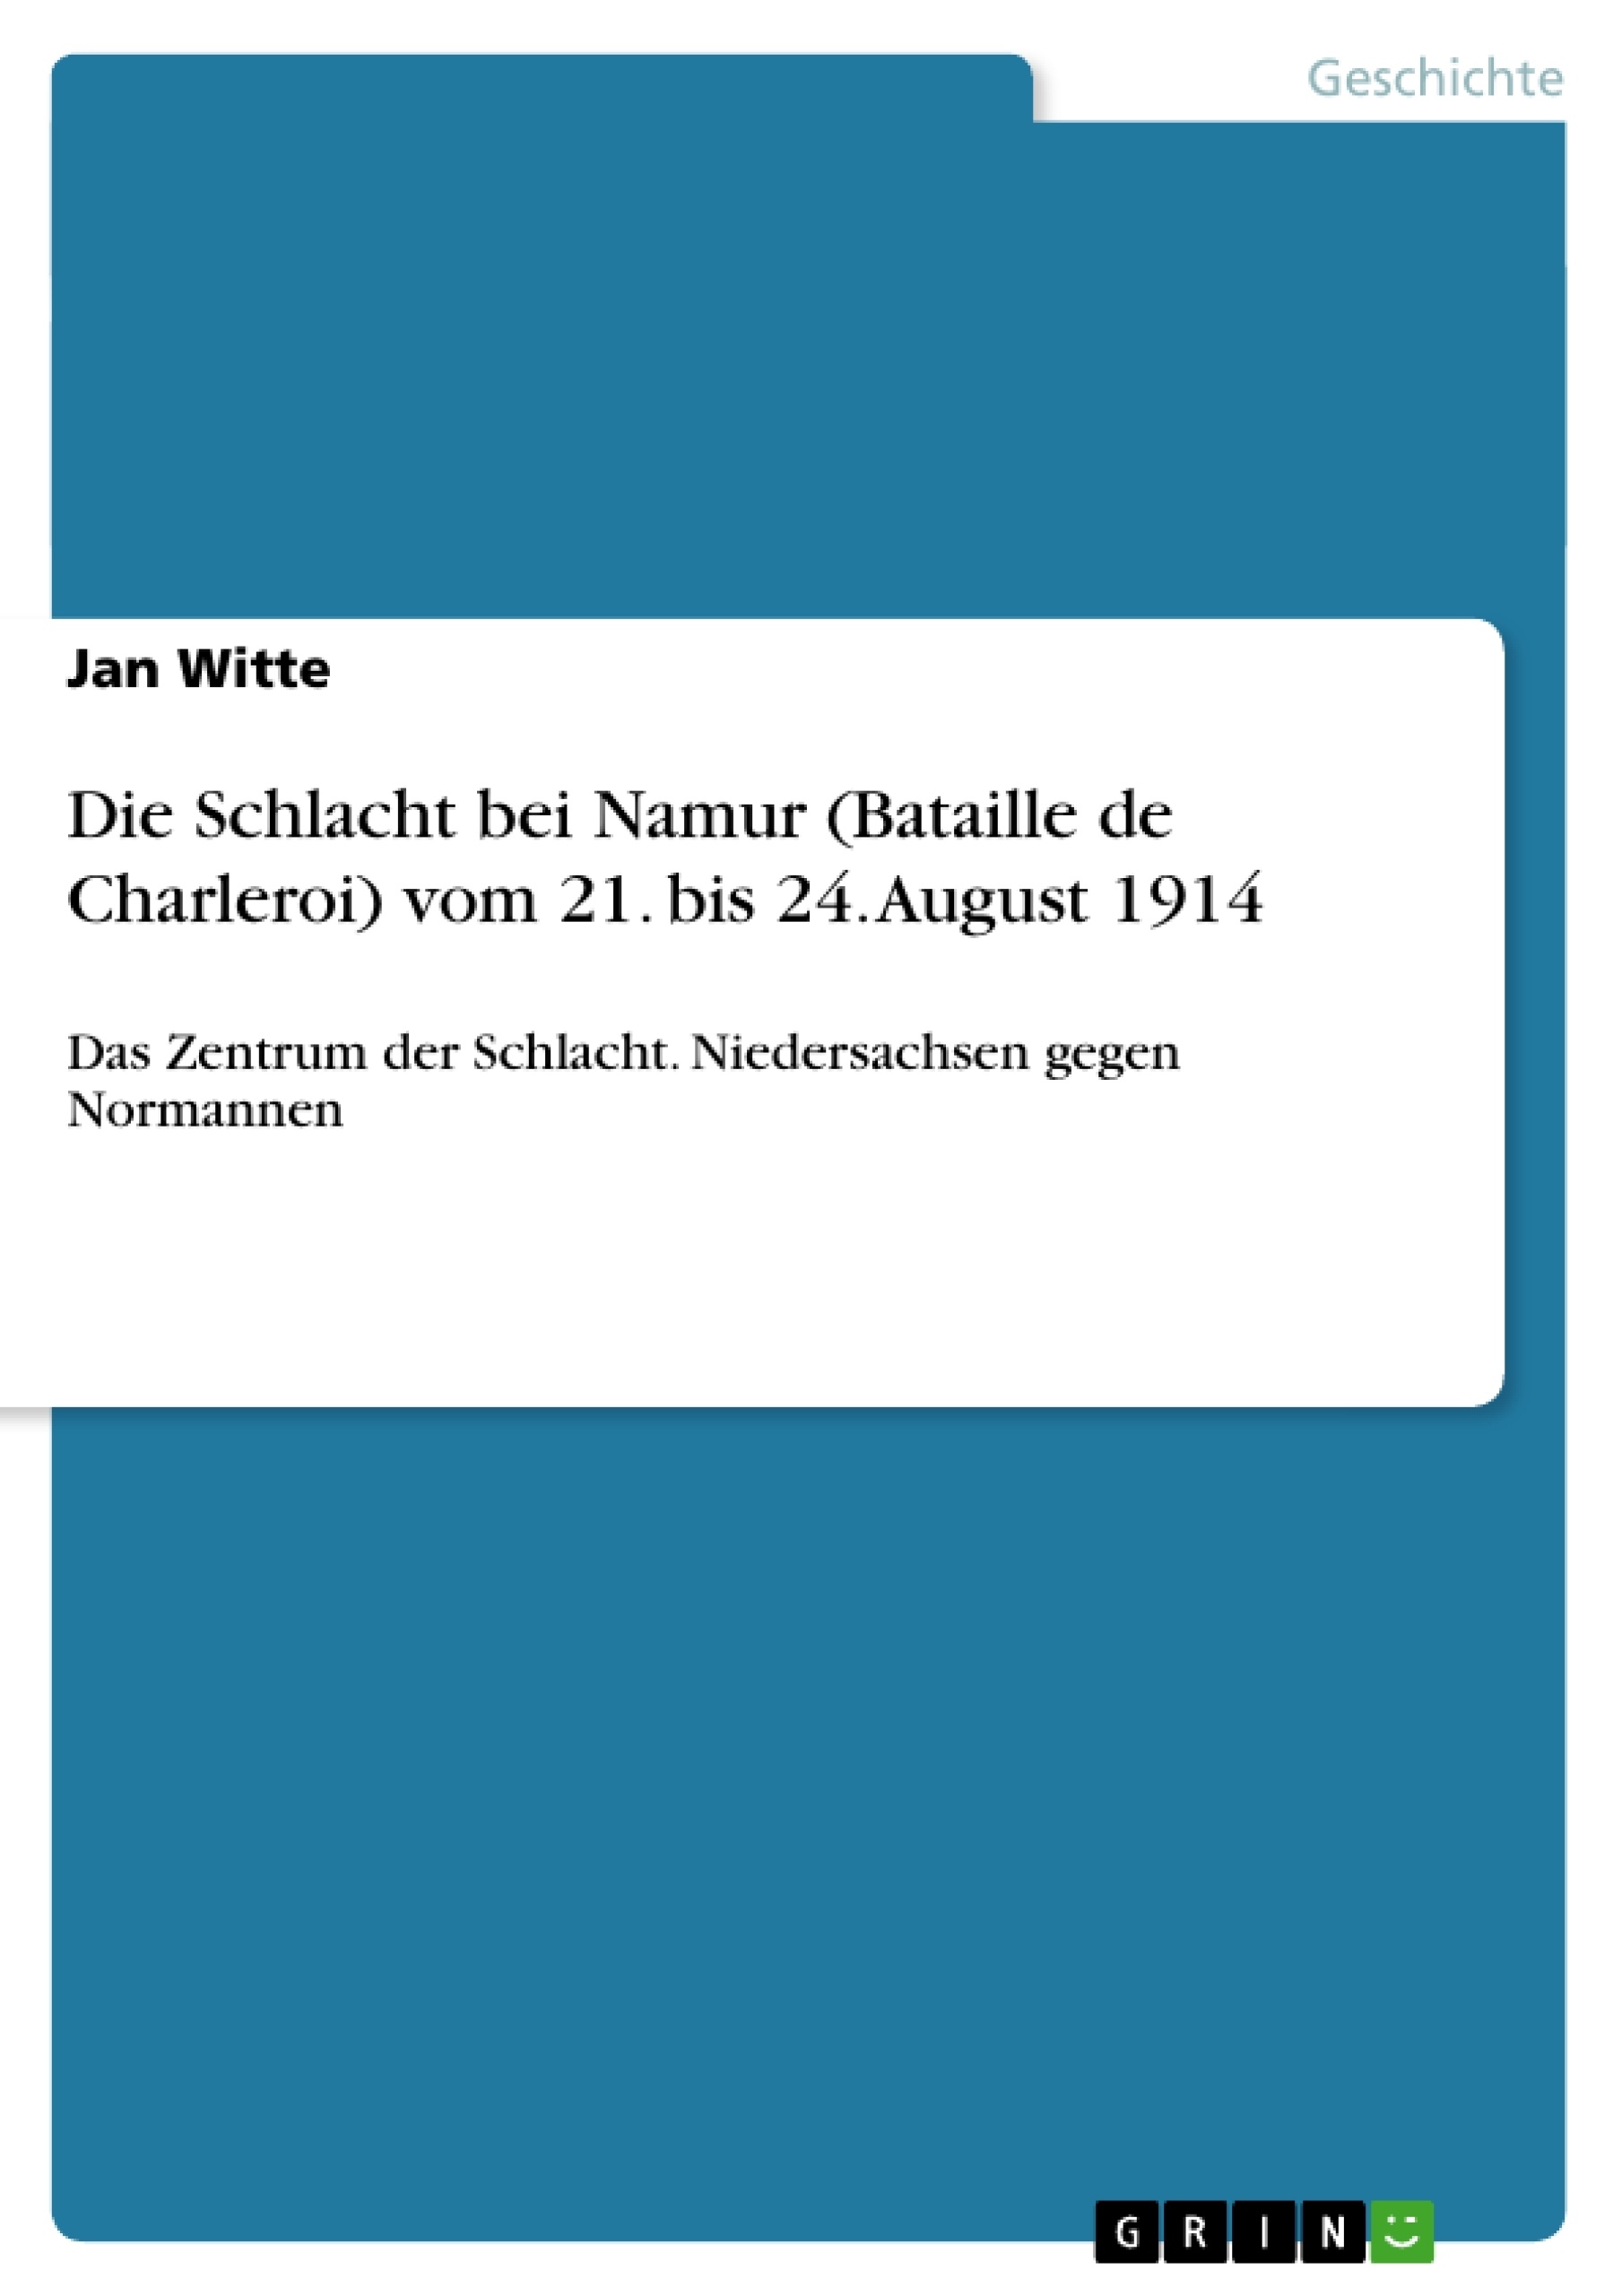 Titel: Die Schlacht bei Namur (Bataille de Charleroi) vom 21. bis 24. August 1914